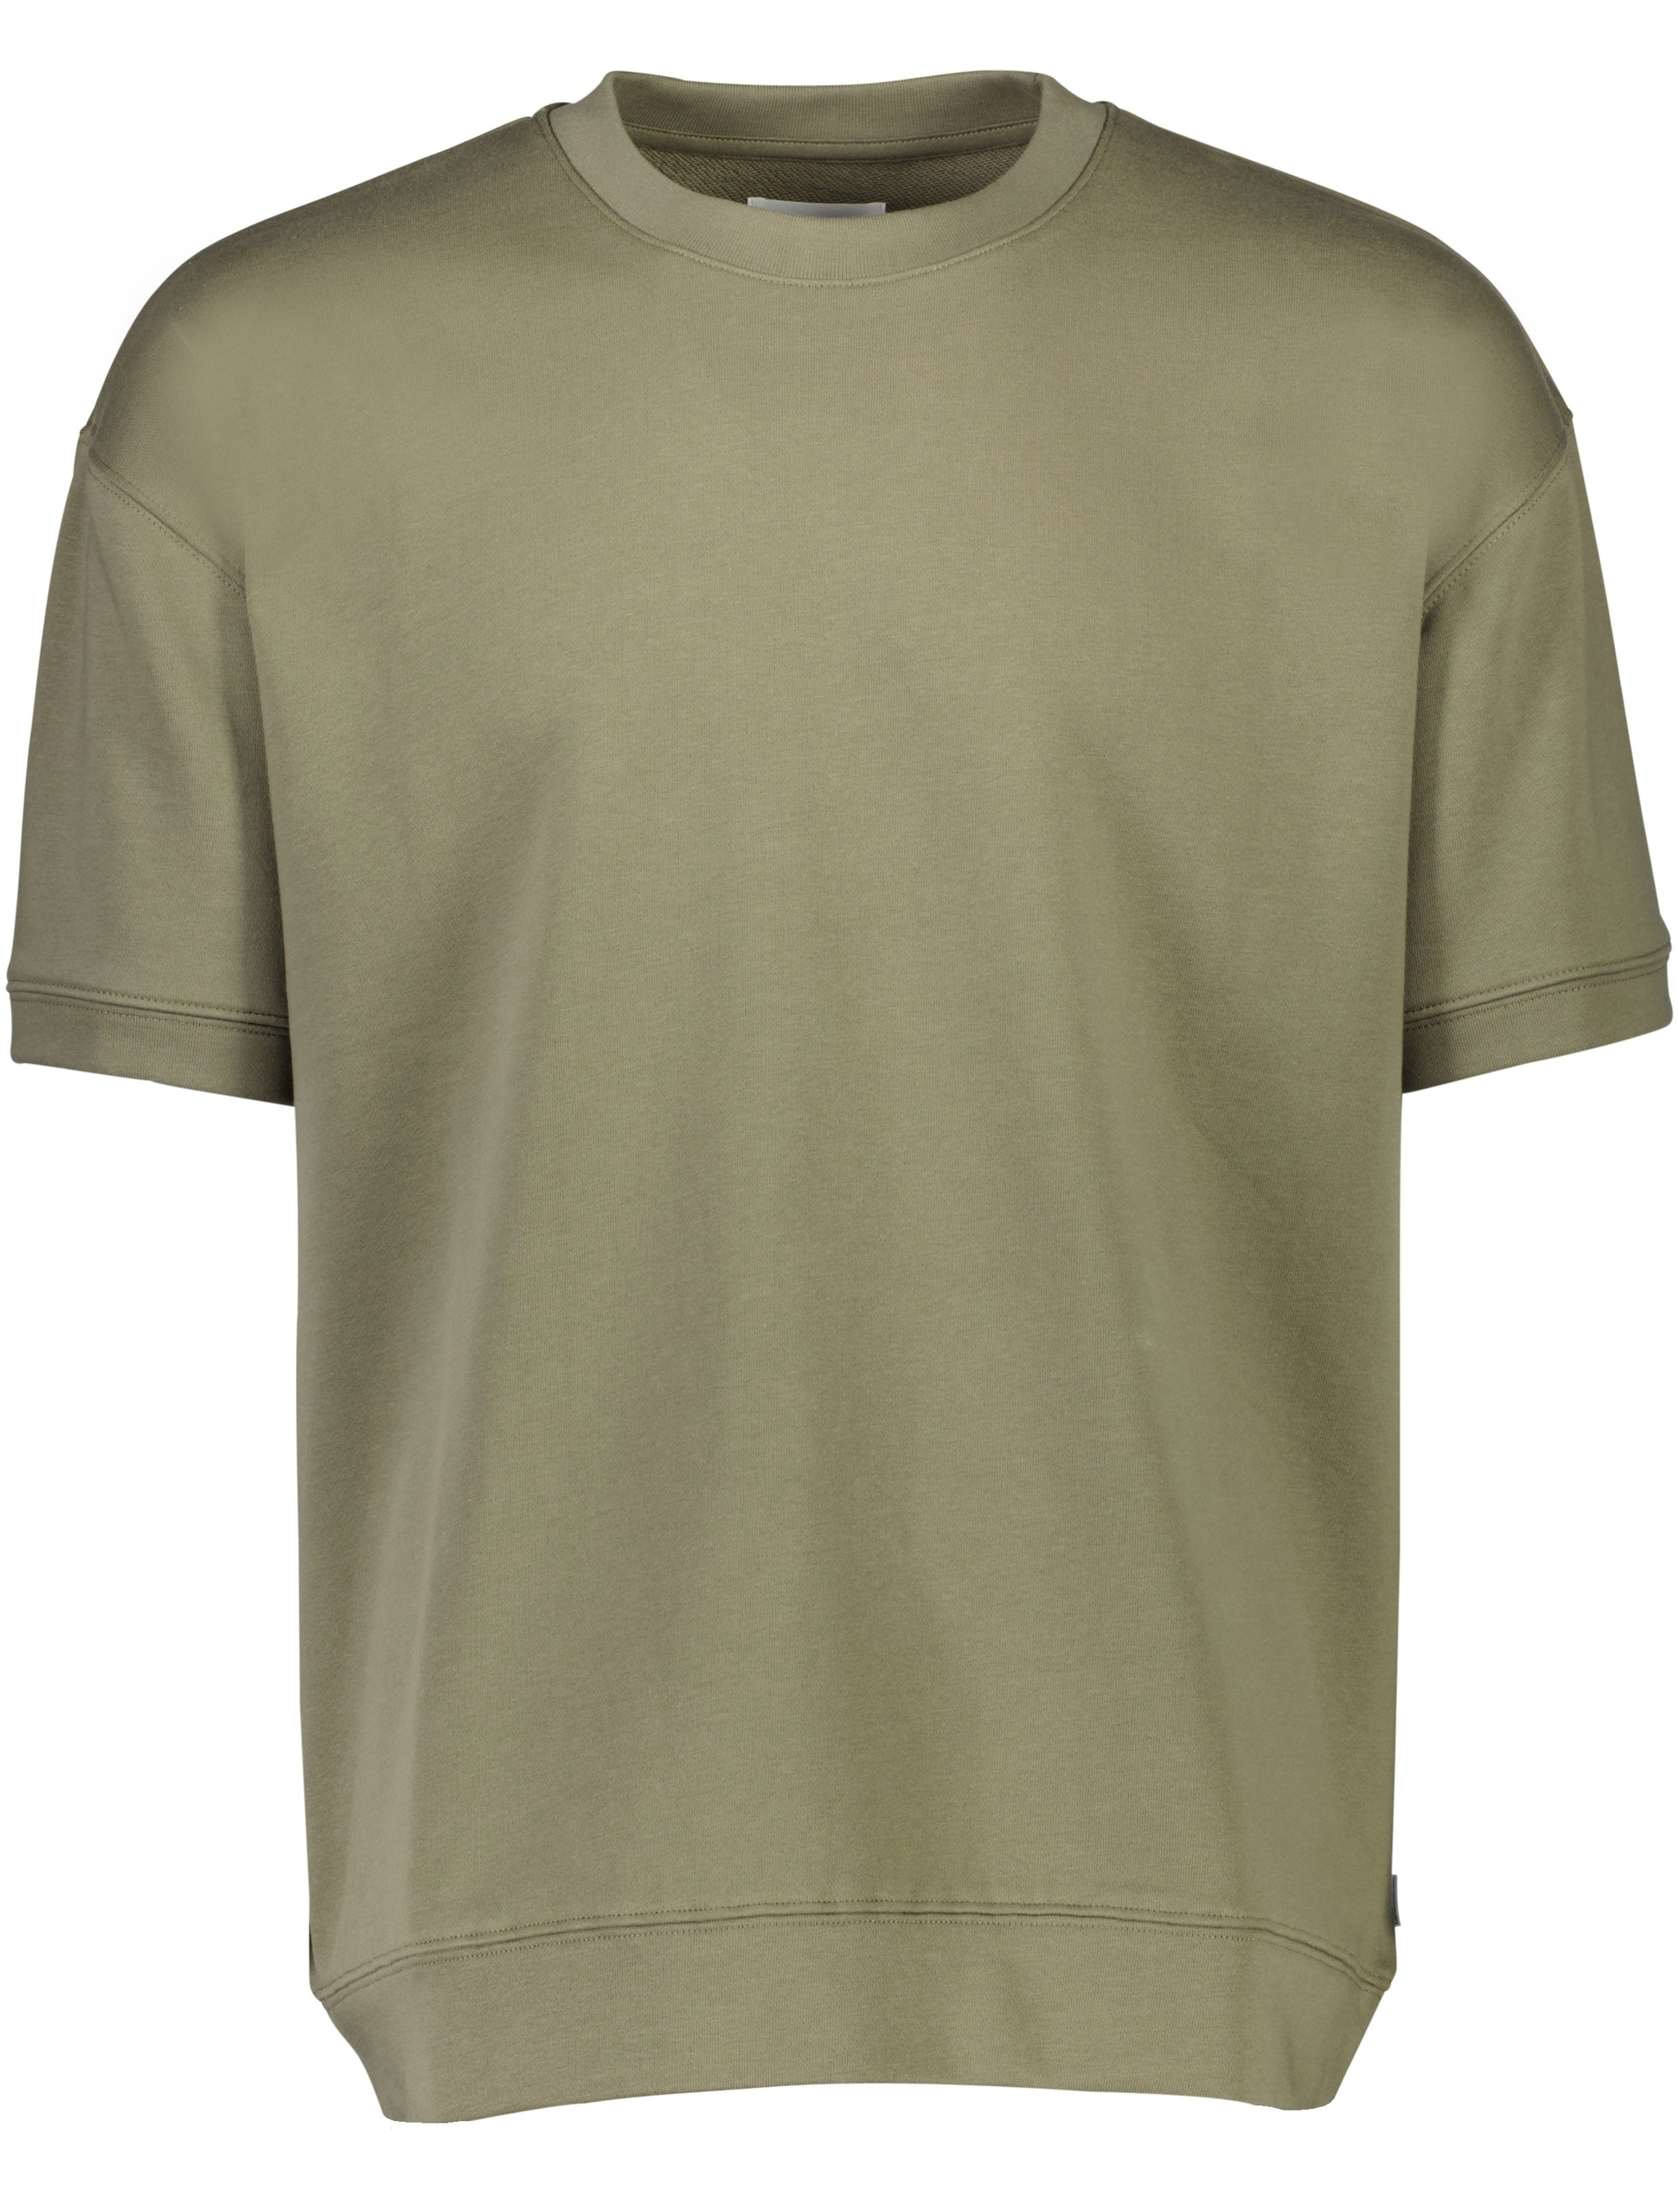 Lindbergh T-shirt grün / army